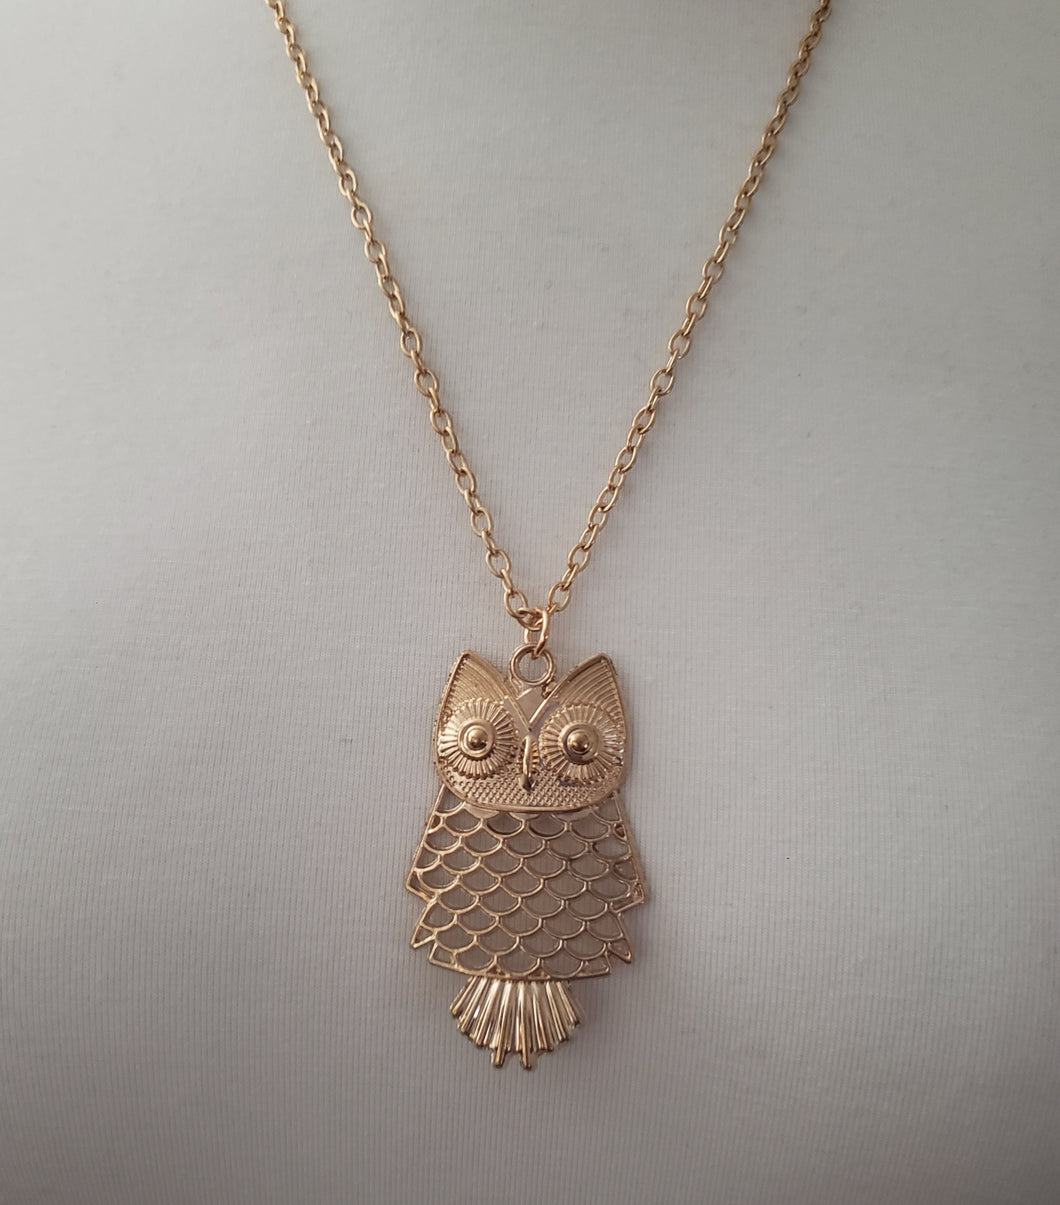 Owl Pendant Necklace Gold Color